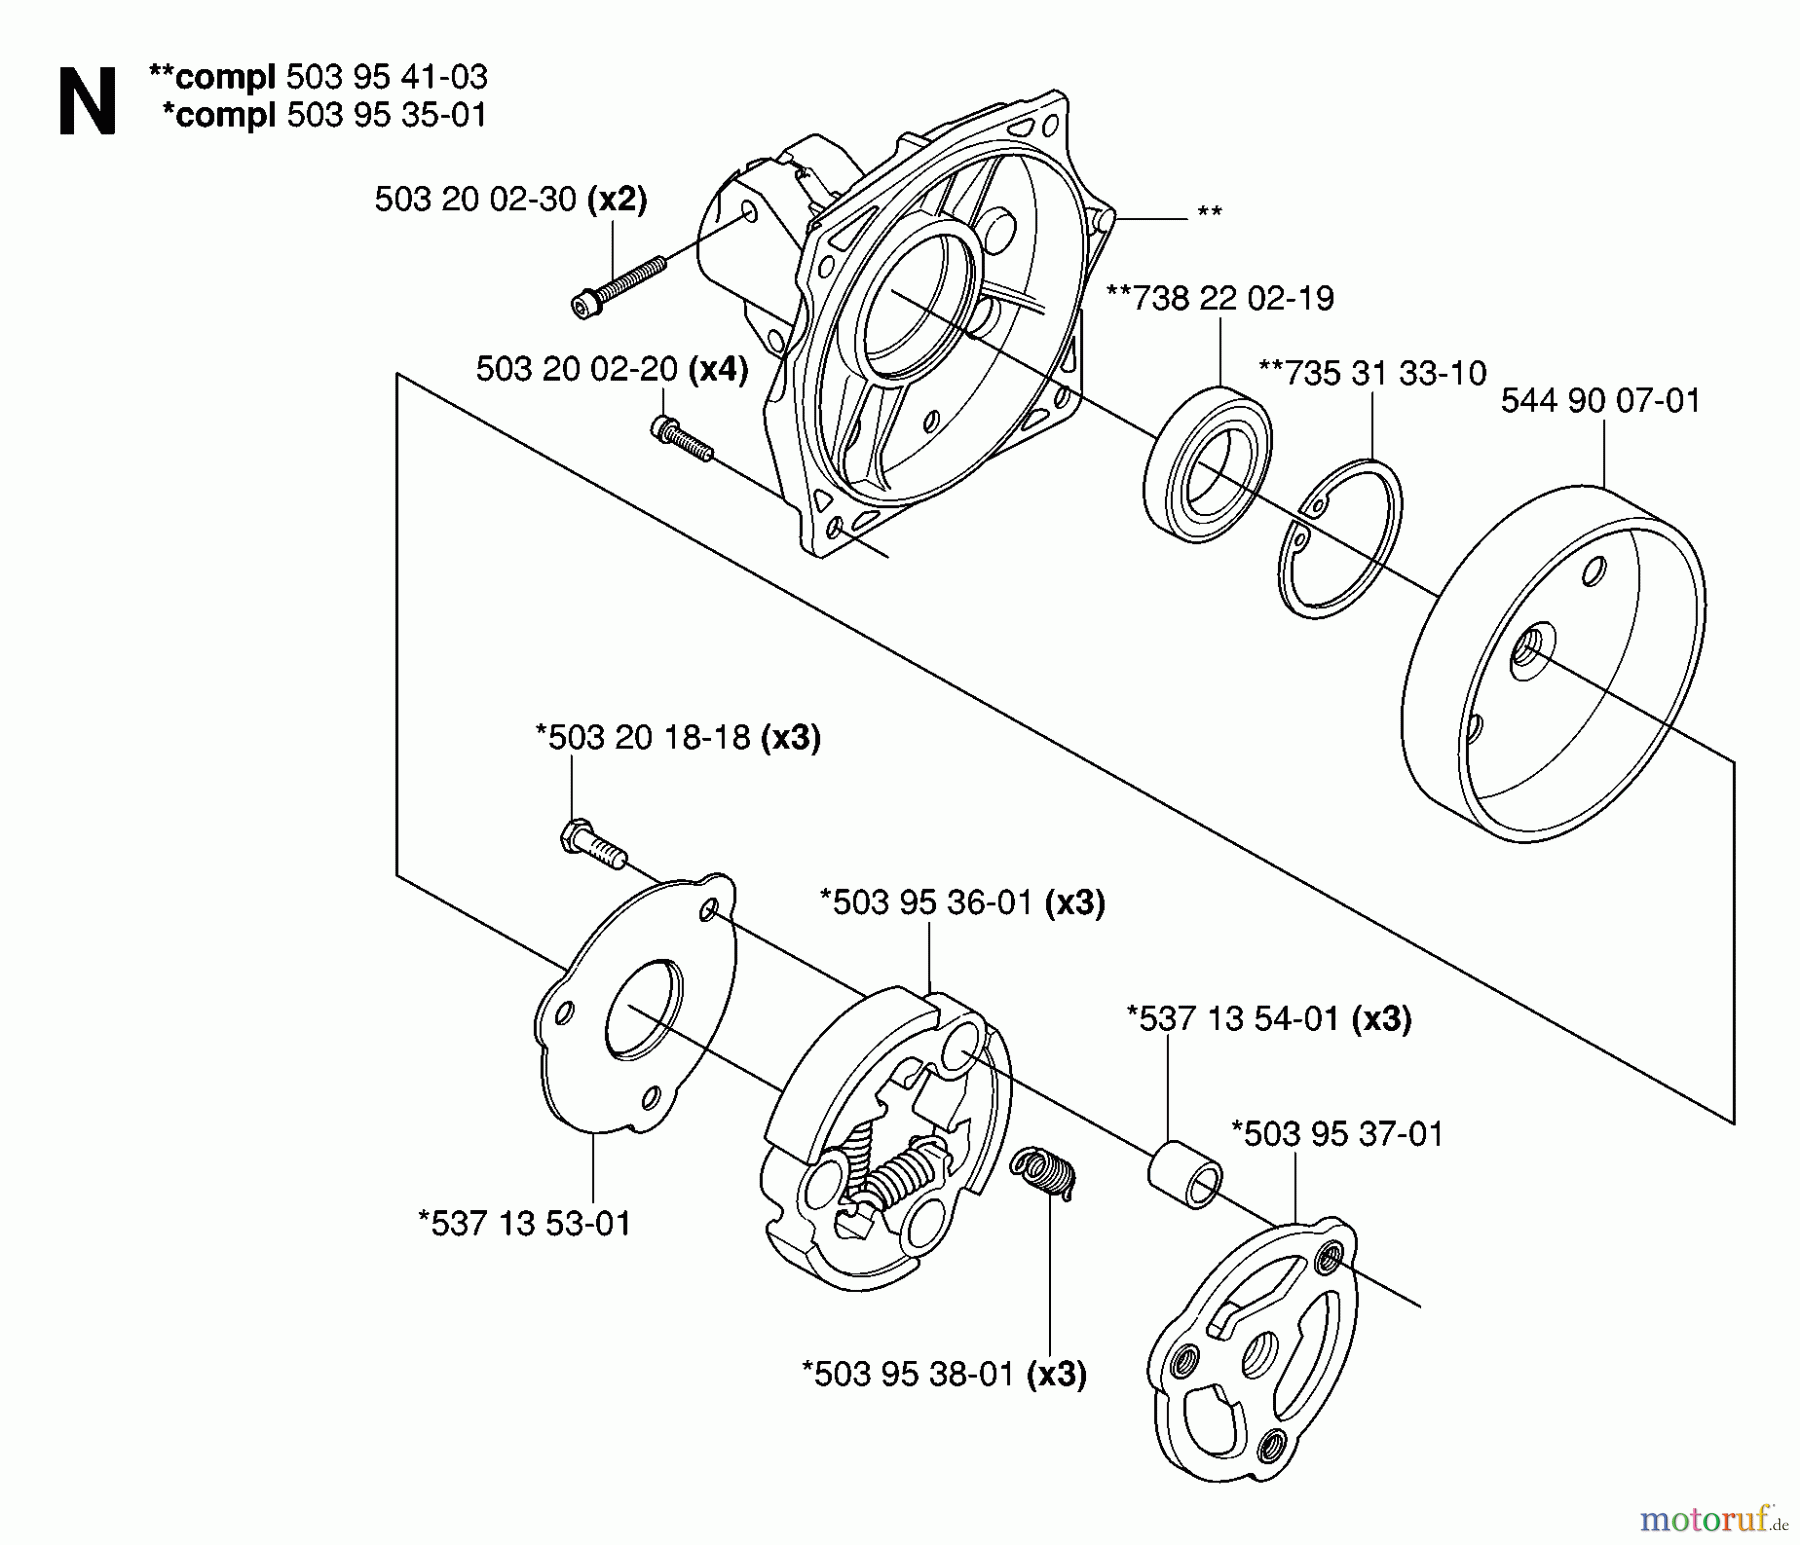  Jonsered Motorsensen, Trimmer FC2145W - Jonsered String/Brush Trimmer (2006-10) CLUTCH